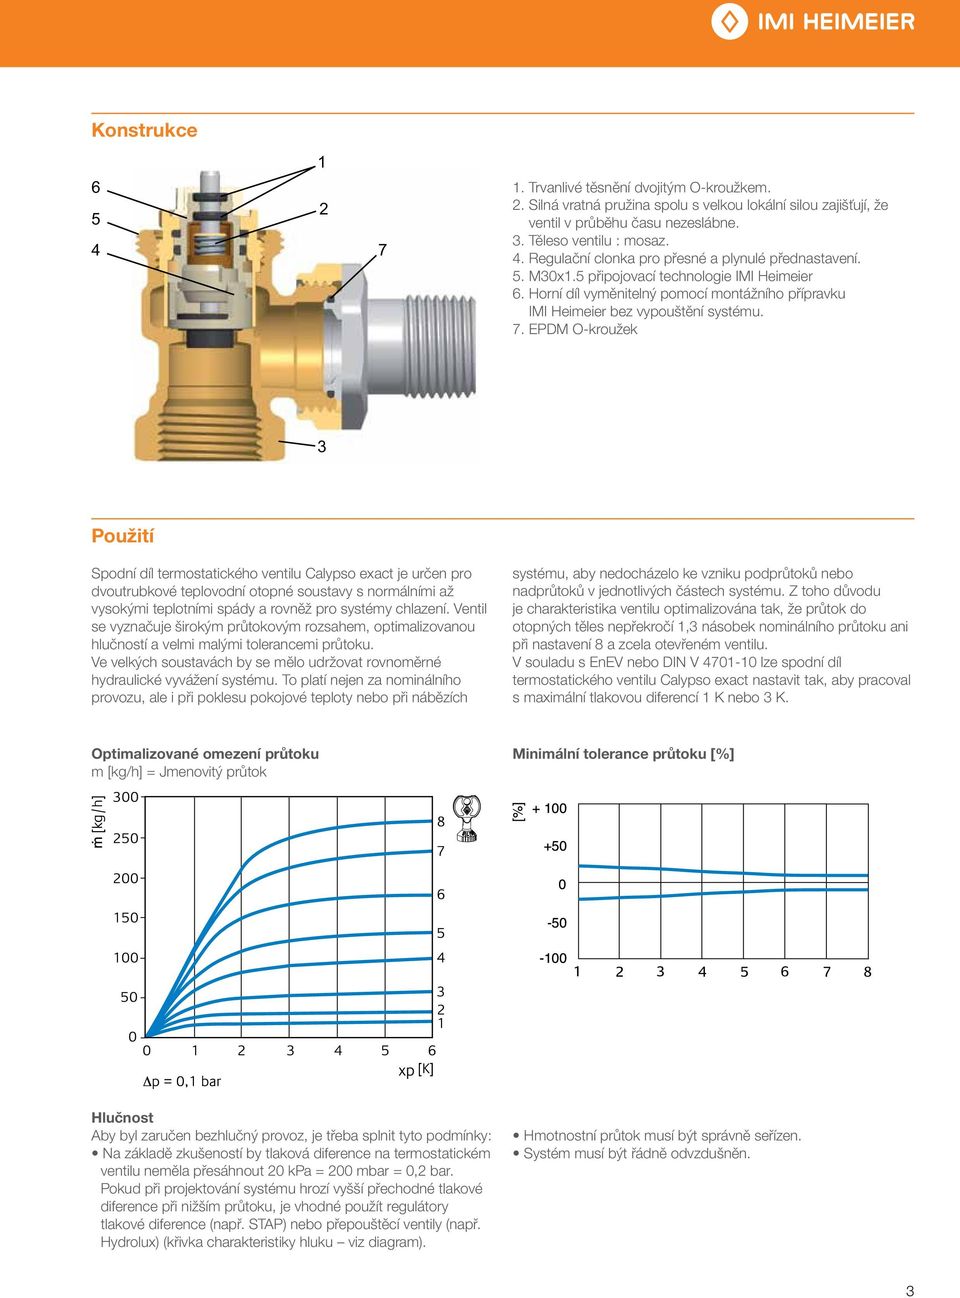 EPDM O-kroužek Použití Spodní díl termostatického ventilu Calypso exact je určen pro dvoutrubkové teplovodní otopné soustavy s normálními až vysokými teplotními spády a rovněž pro systémy chlazení.